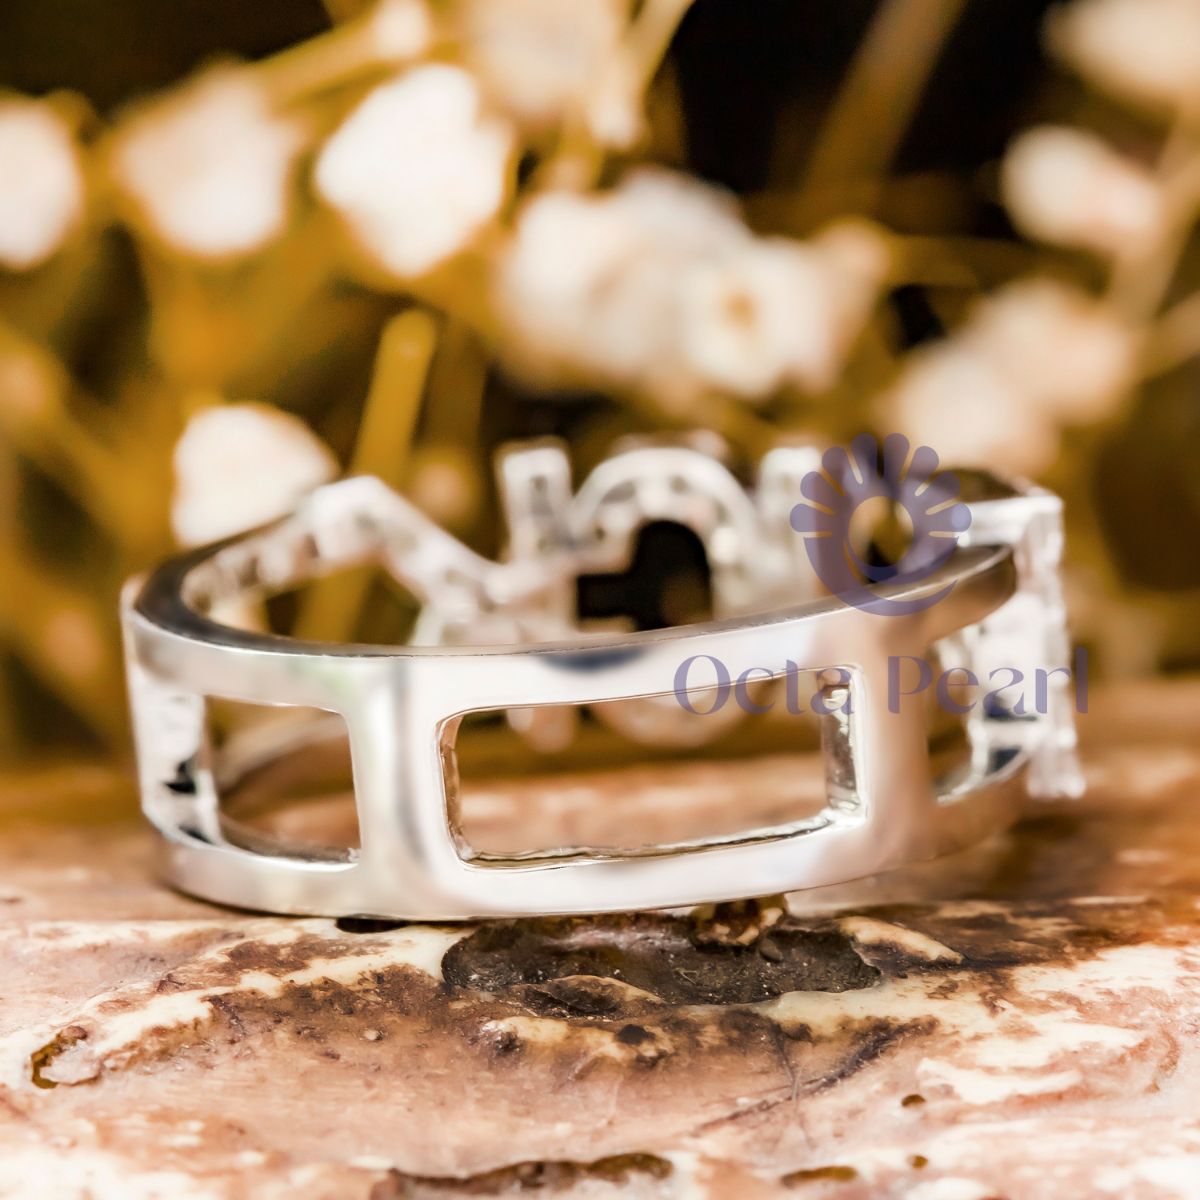 Round Moissanite "FUCK" Ring For Valentine's Gift